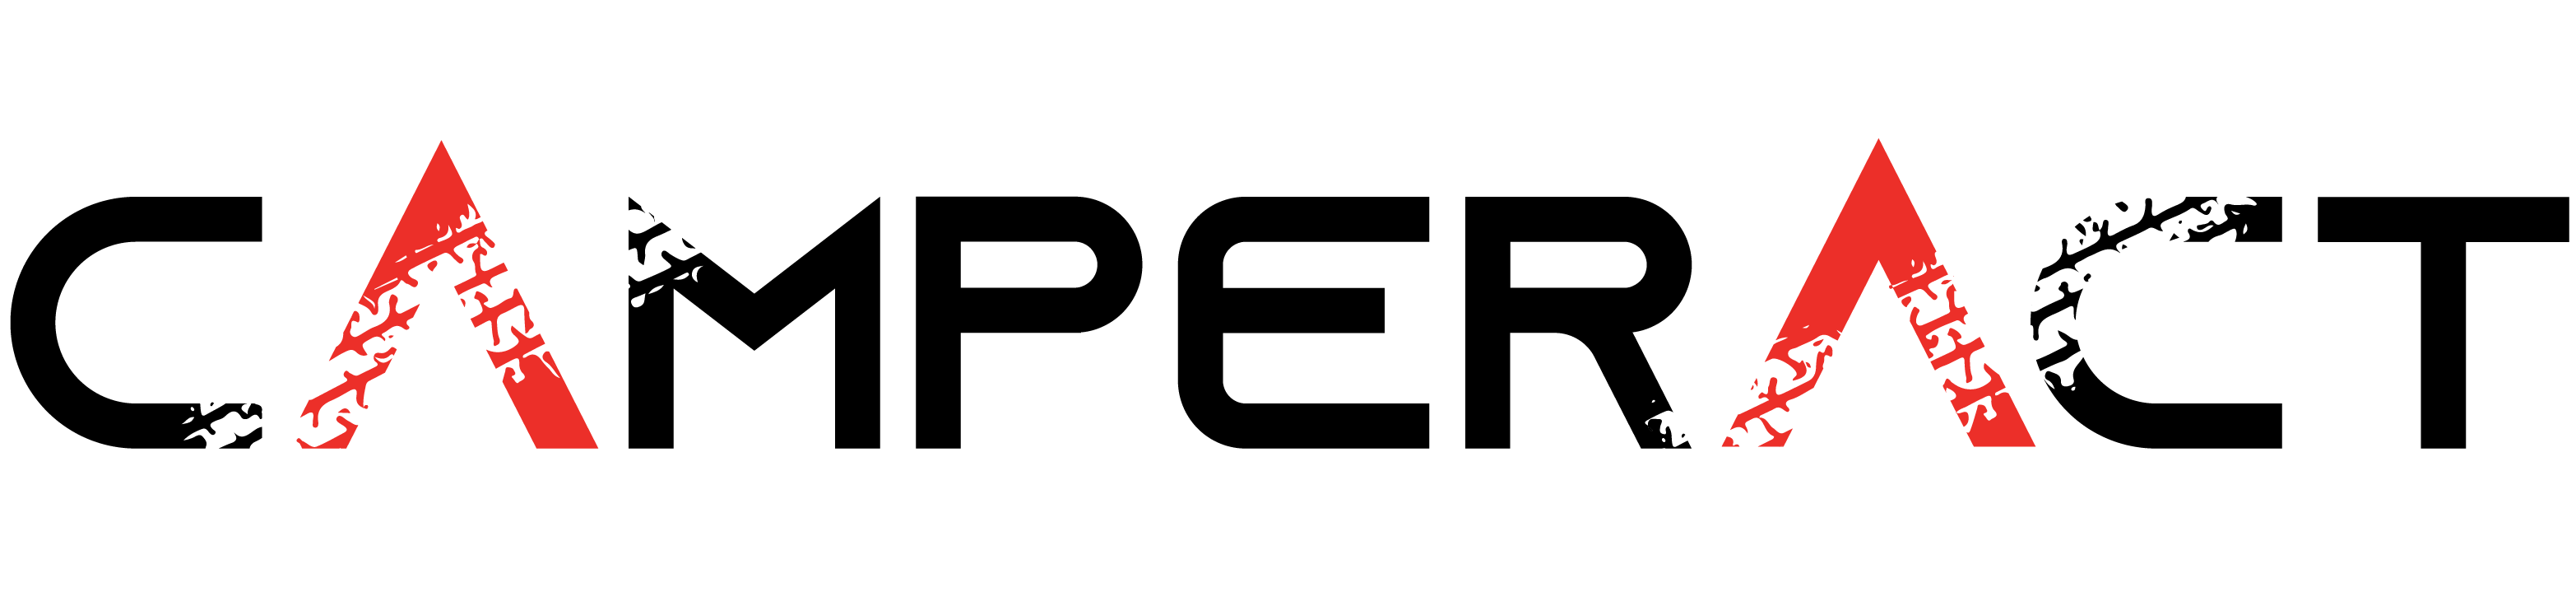 Camperact logo design